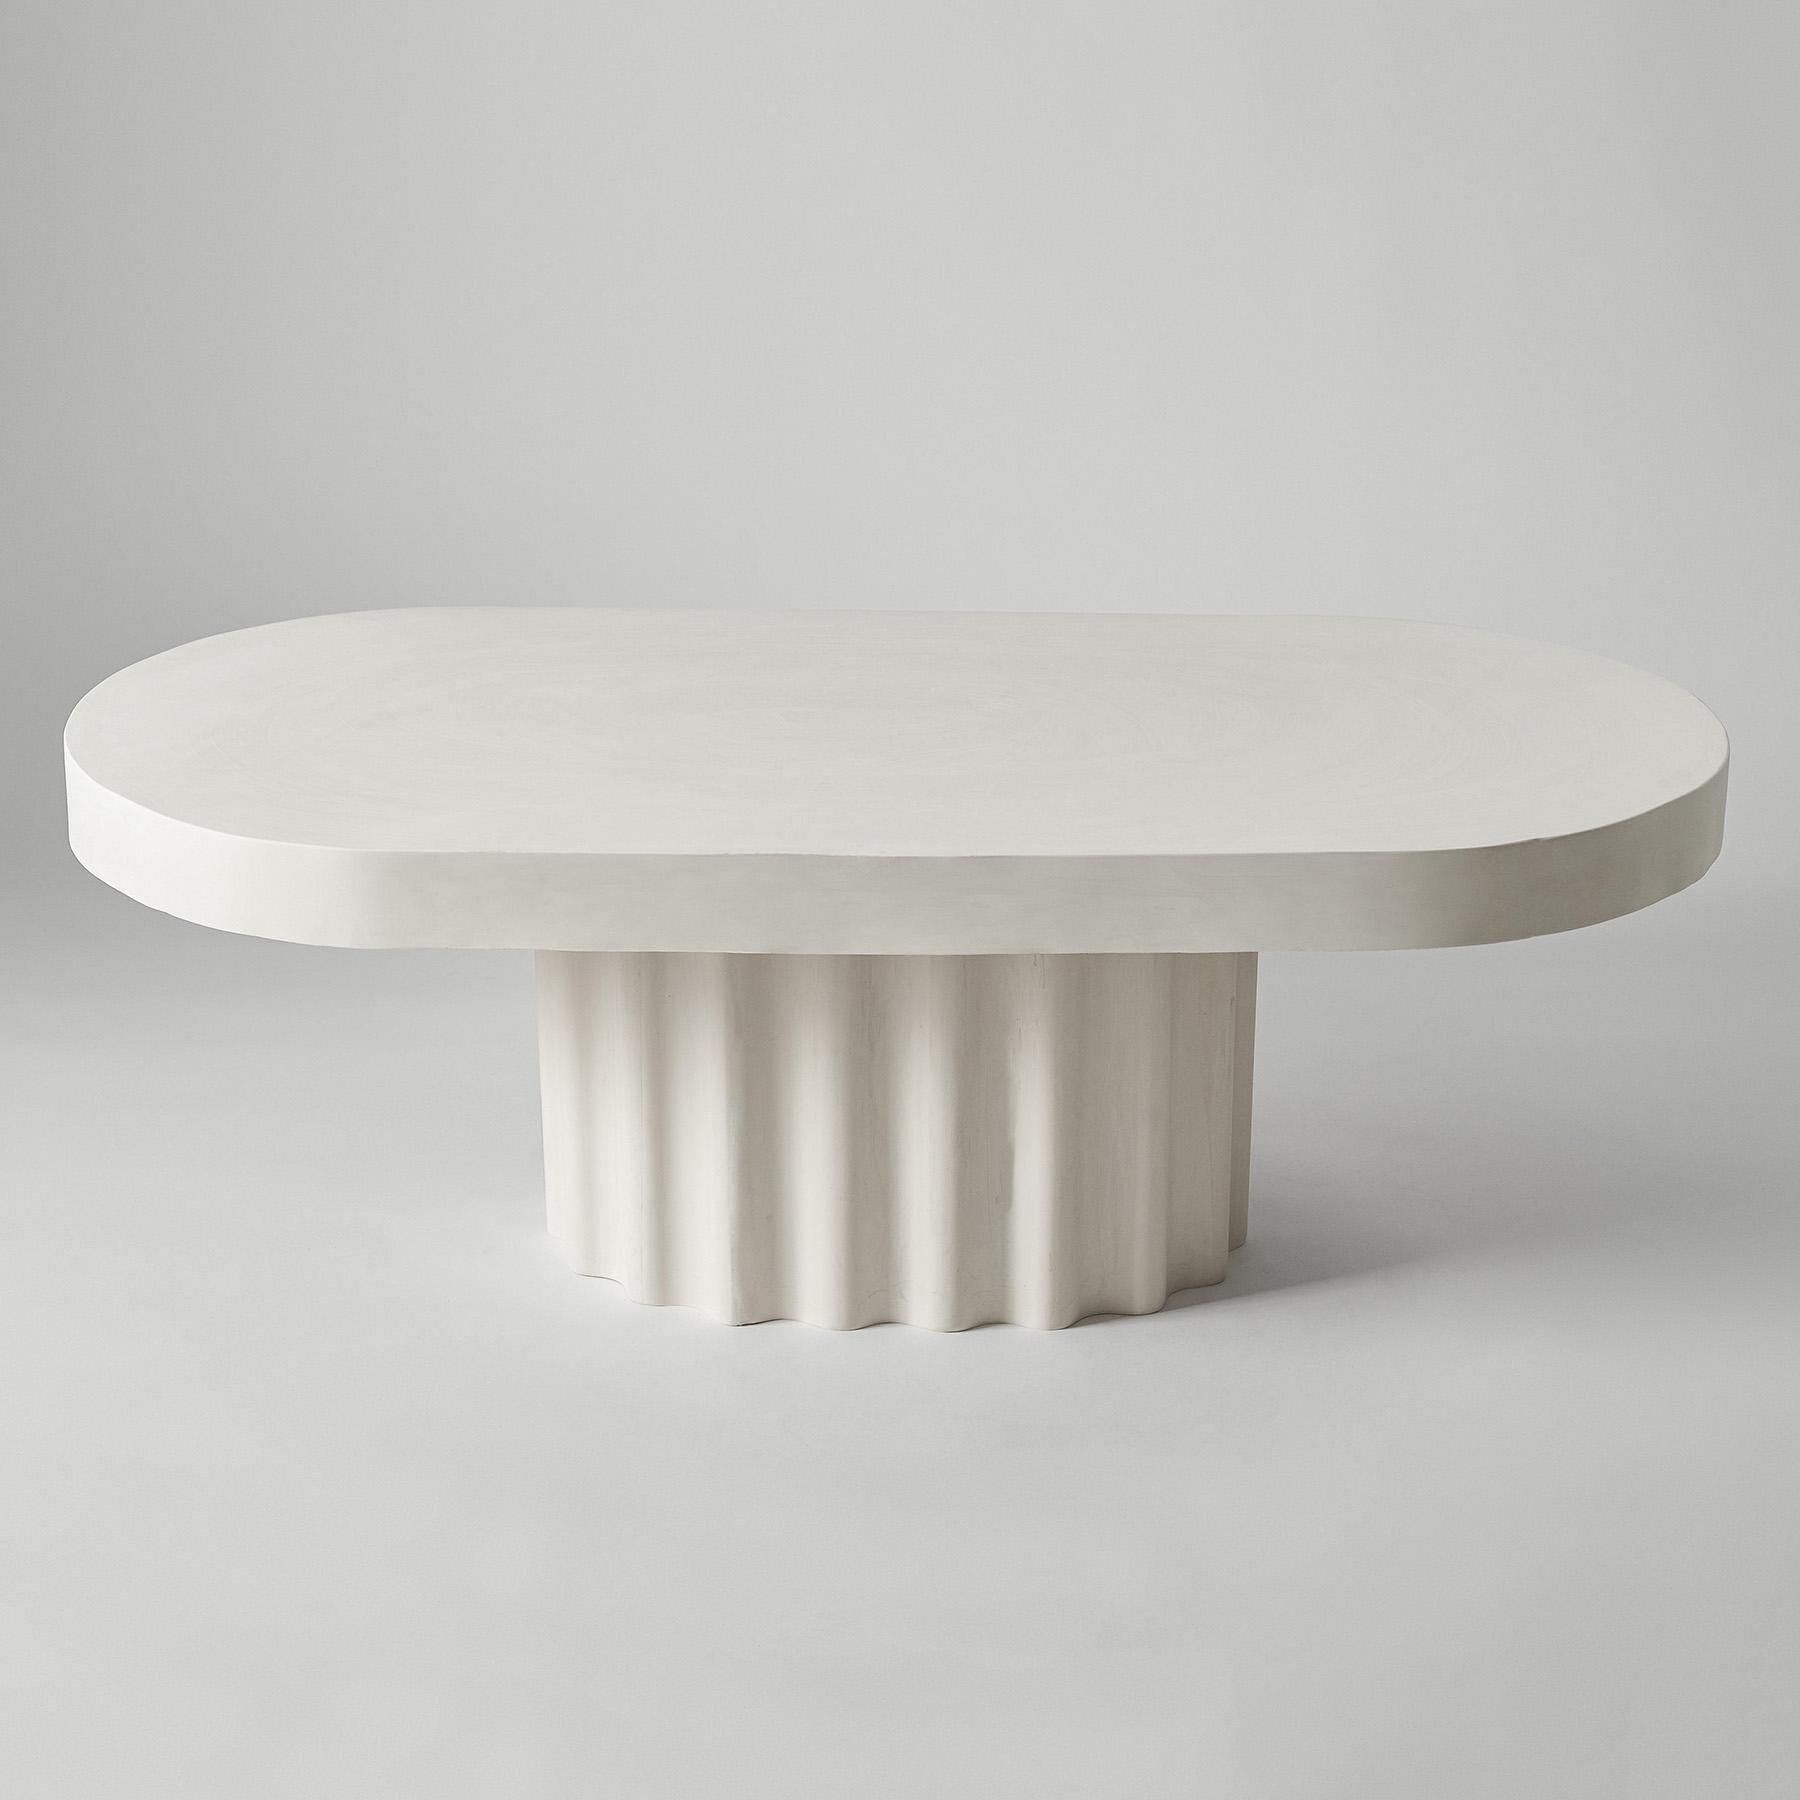 Table basse ovale Ivory Wave Off-White par Perler 
Dimensions : D 58 x L 120 x H 60 cm.
MATERIAL : Jesmonite.
Poids : 45 kg.

Les dimensions peuvent varier. Veuillez nous contacter.

Ivory Wave est une table basse ovale reposant sur un pied